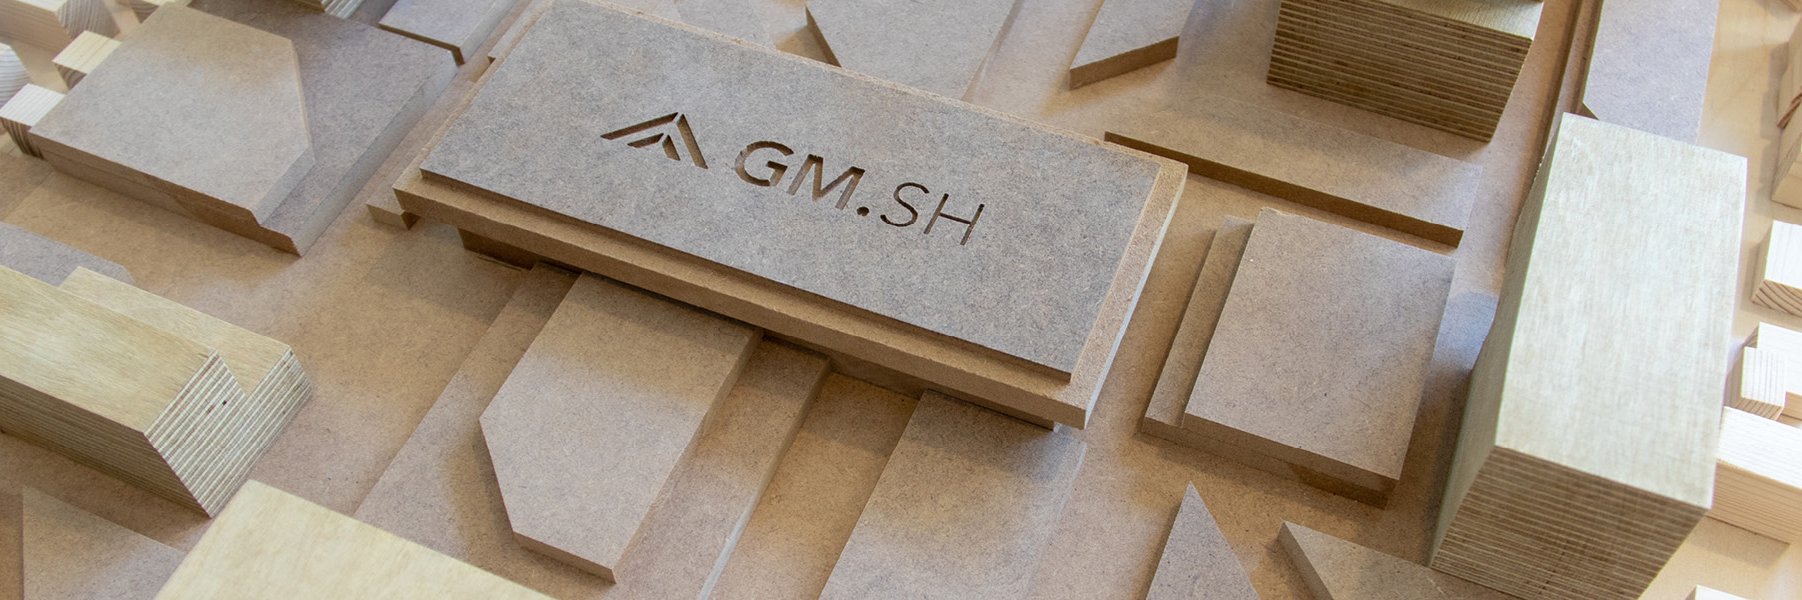 Vogelperspektive von einem Holz-Modell, es zeigt Gebäude und auf einem Holzklotz ist das GMSH-Logo zu sehen. 